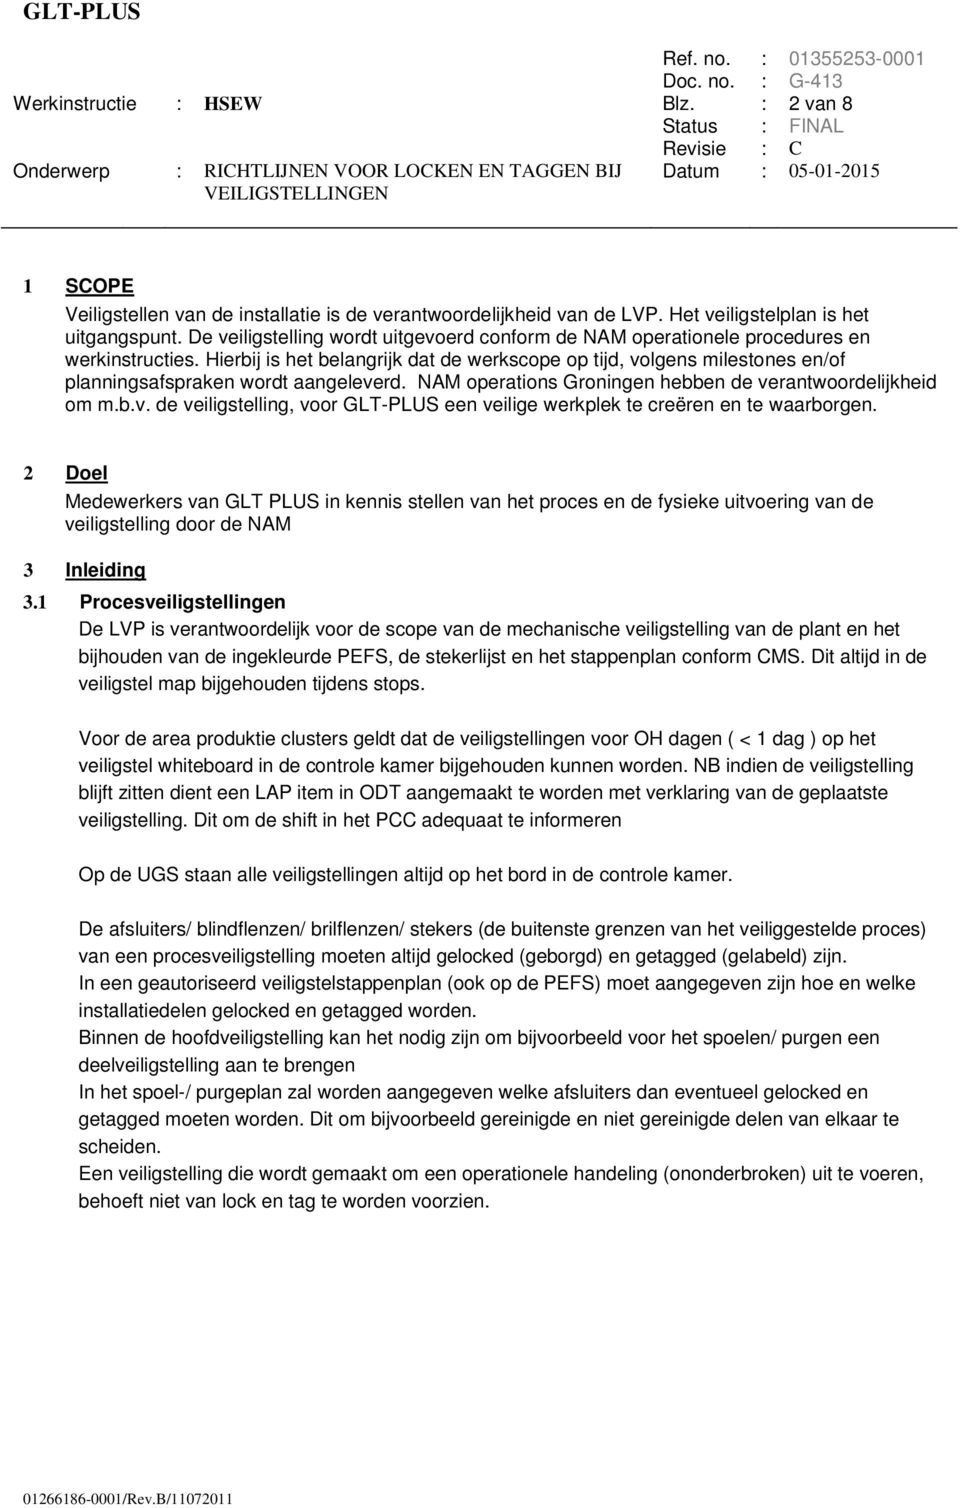 Hierbij is het belangrijk dat de werkscope op tijd, volgens milestones en/of planningsafspraken wordt aangeleverd. NAM operations Groningen hebben de verantwoordelijkheid om m.b.v. de veiligstelling, voor GLT-PLUS een veilige werkplek te creëren en te waarborgen.